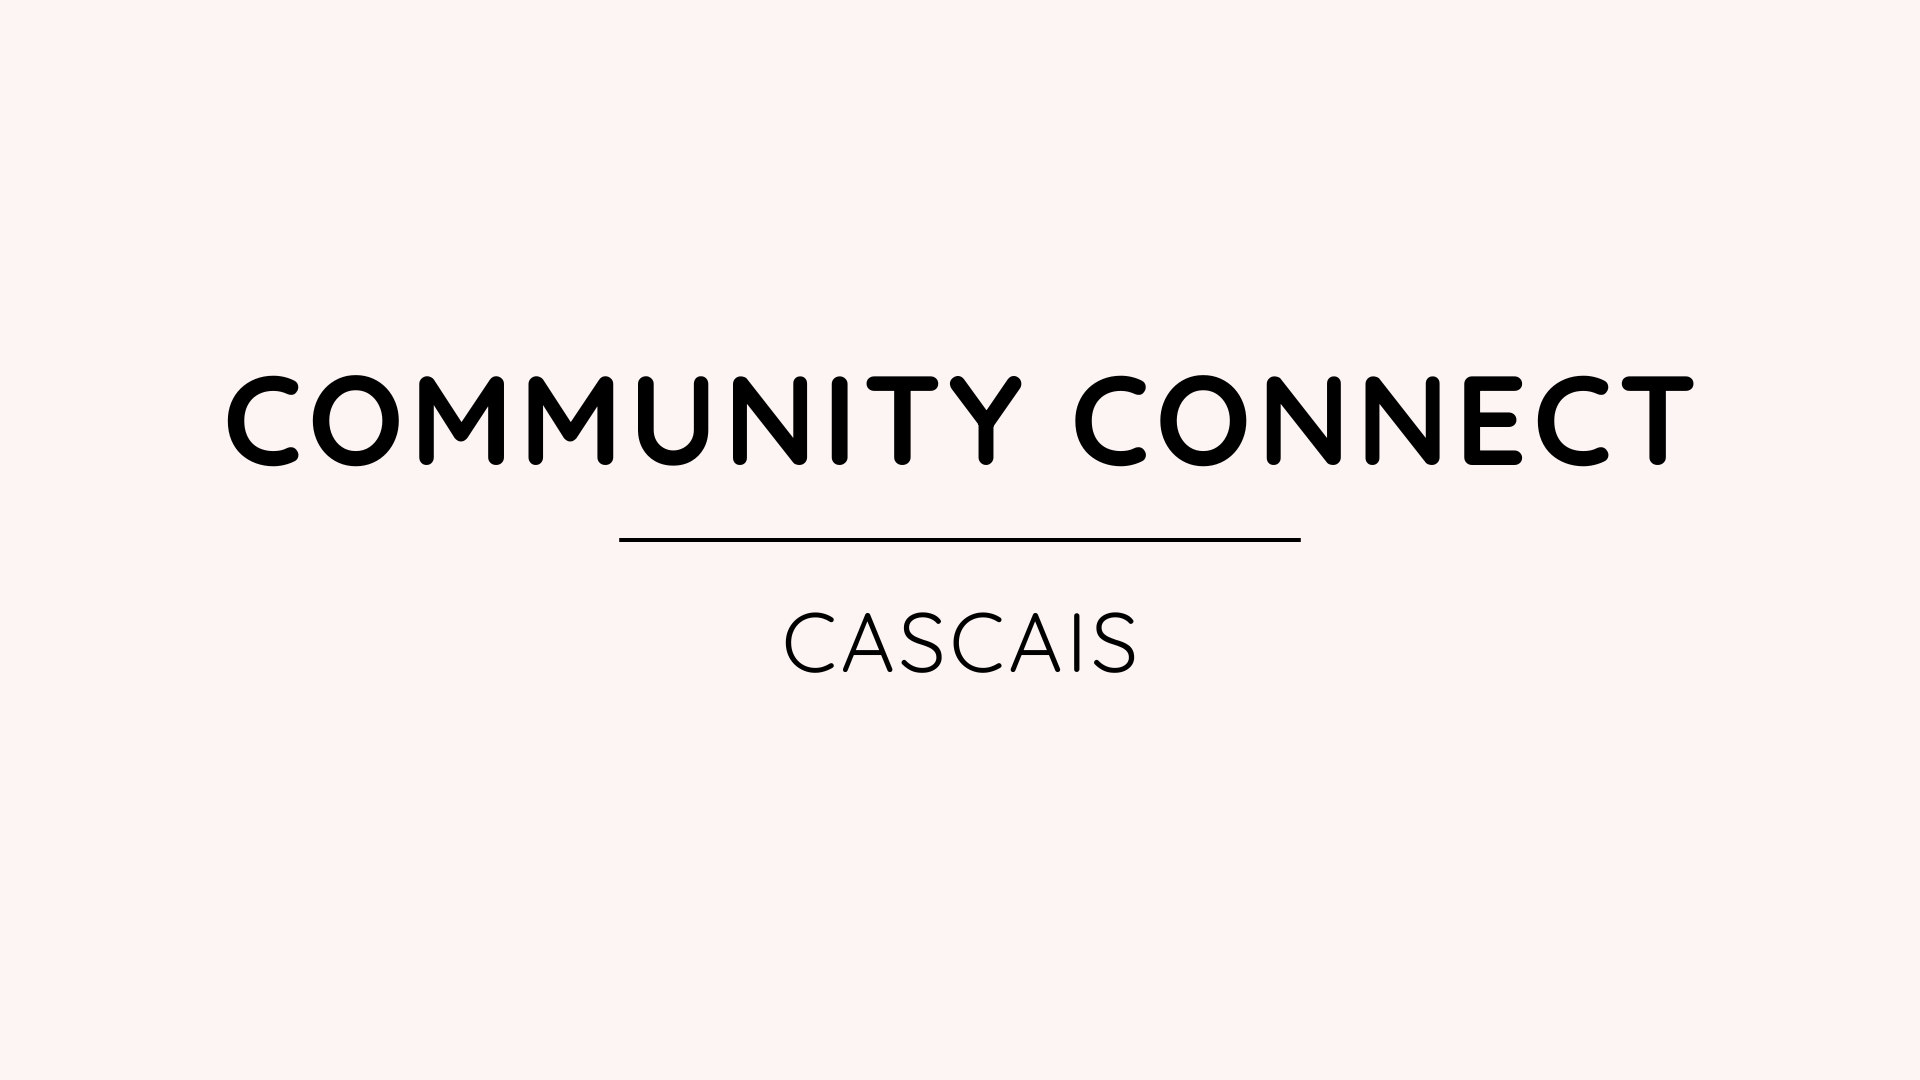 where women connect community connect cascais